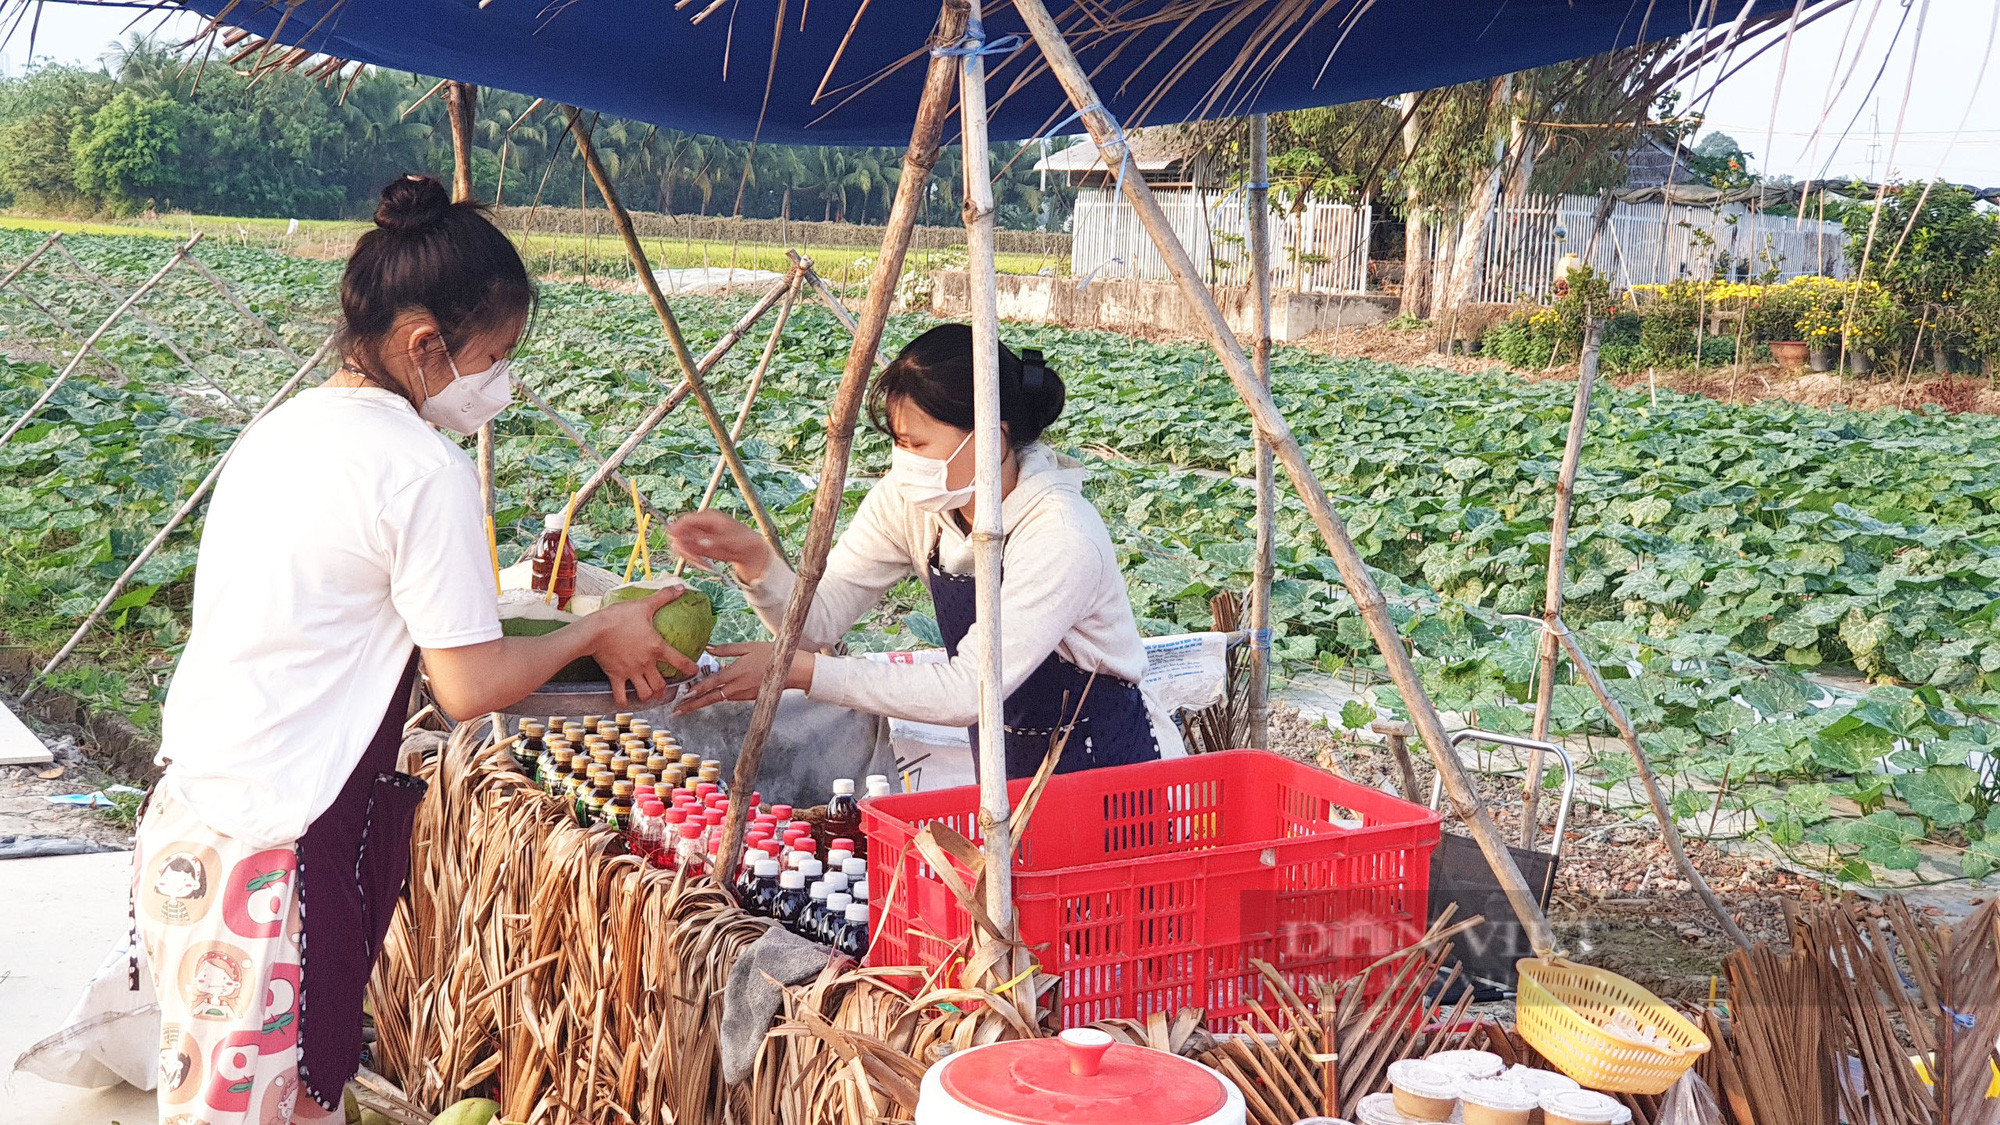 Quán ăn giữa ruộng ở Cần Thơ bất ngờ thu hút cả trăm người dân đến ăn, chụp ảnh mỗi ngày - Ảnh 3.